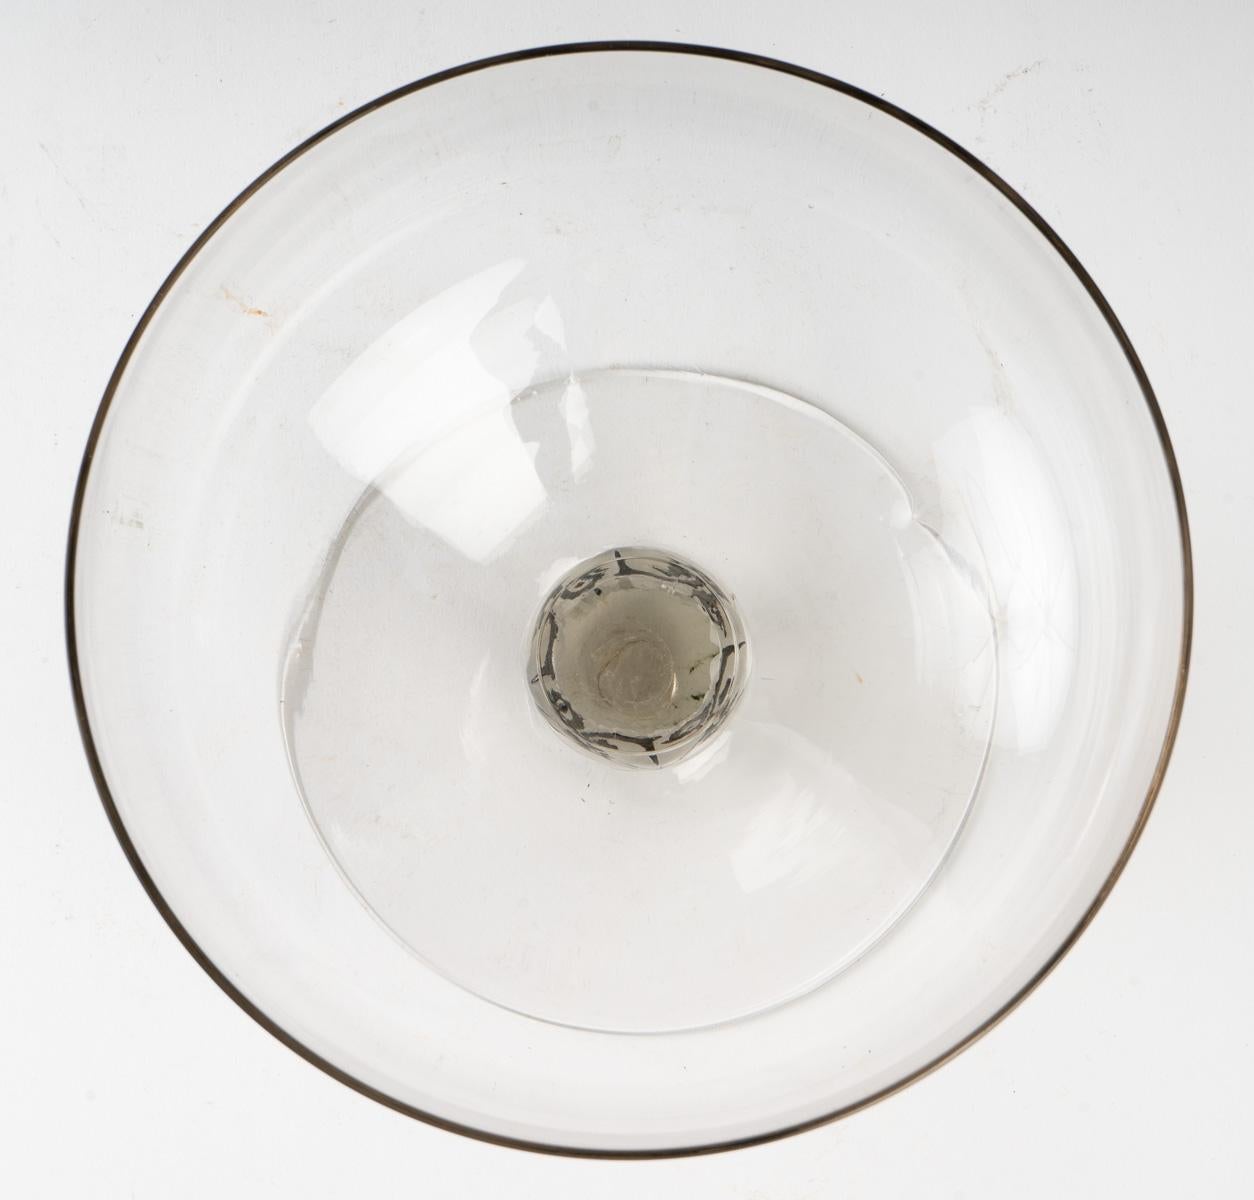 French 1926 René Lalique Saint Denis Bowl Vase Glass with Black Enamel, Fish Design